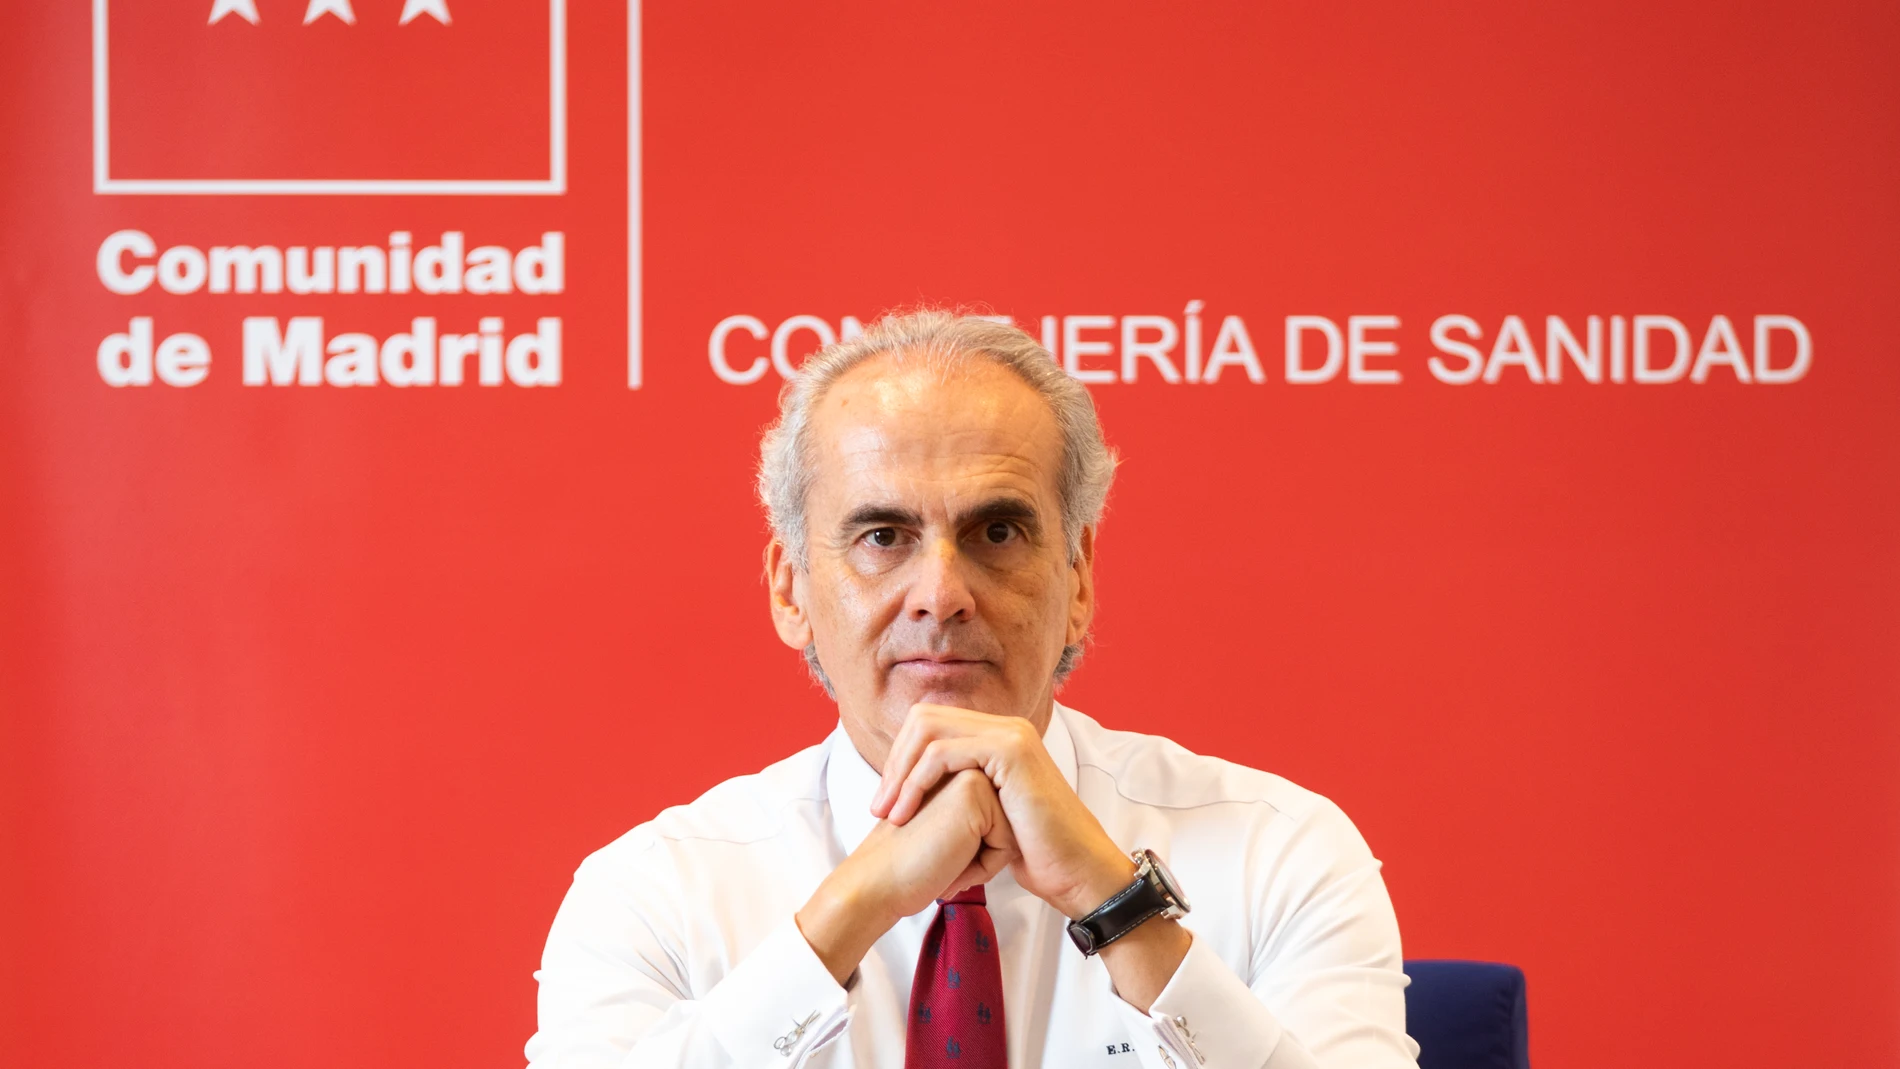 Consejero de Sanidad de la Comunidad de Madrid, Enrique Ruiz Escudero